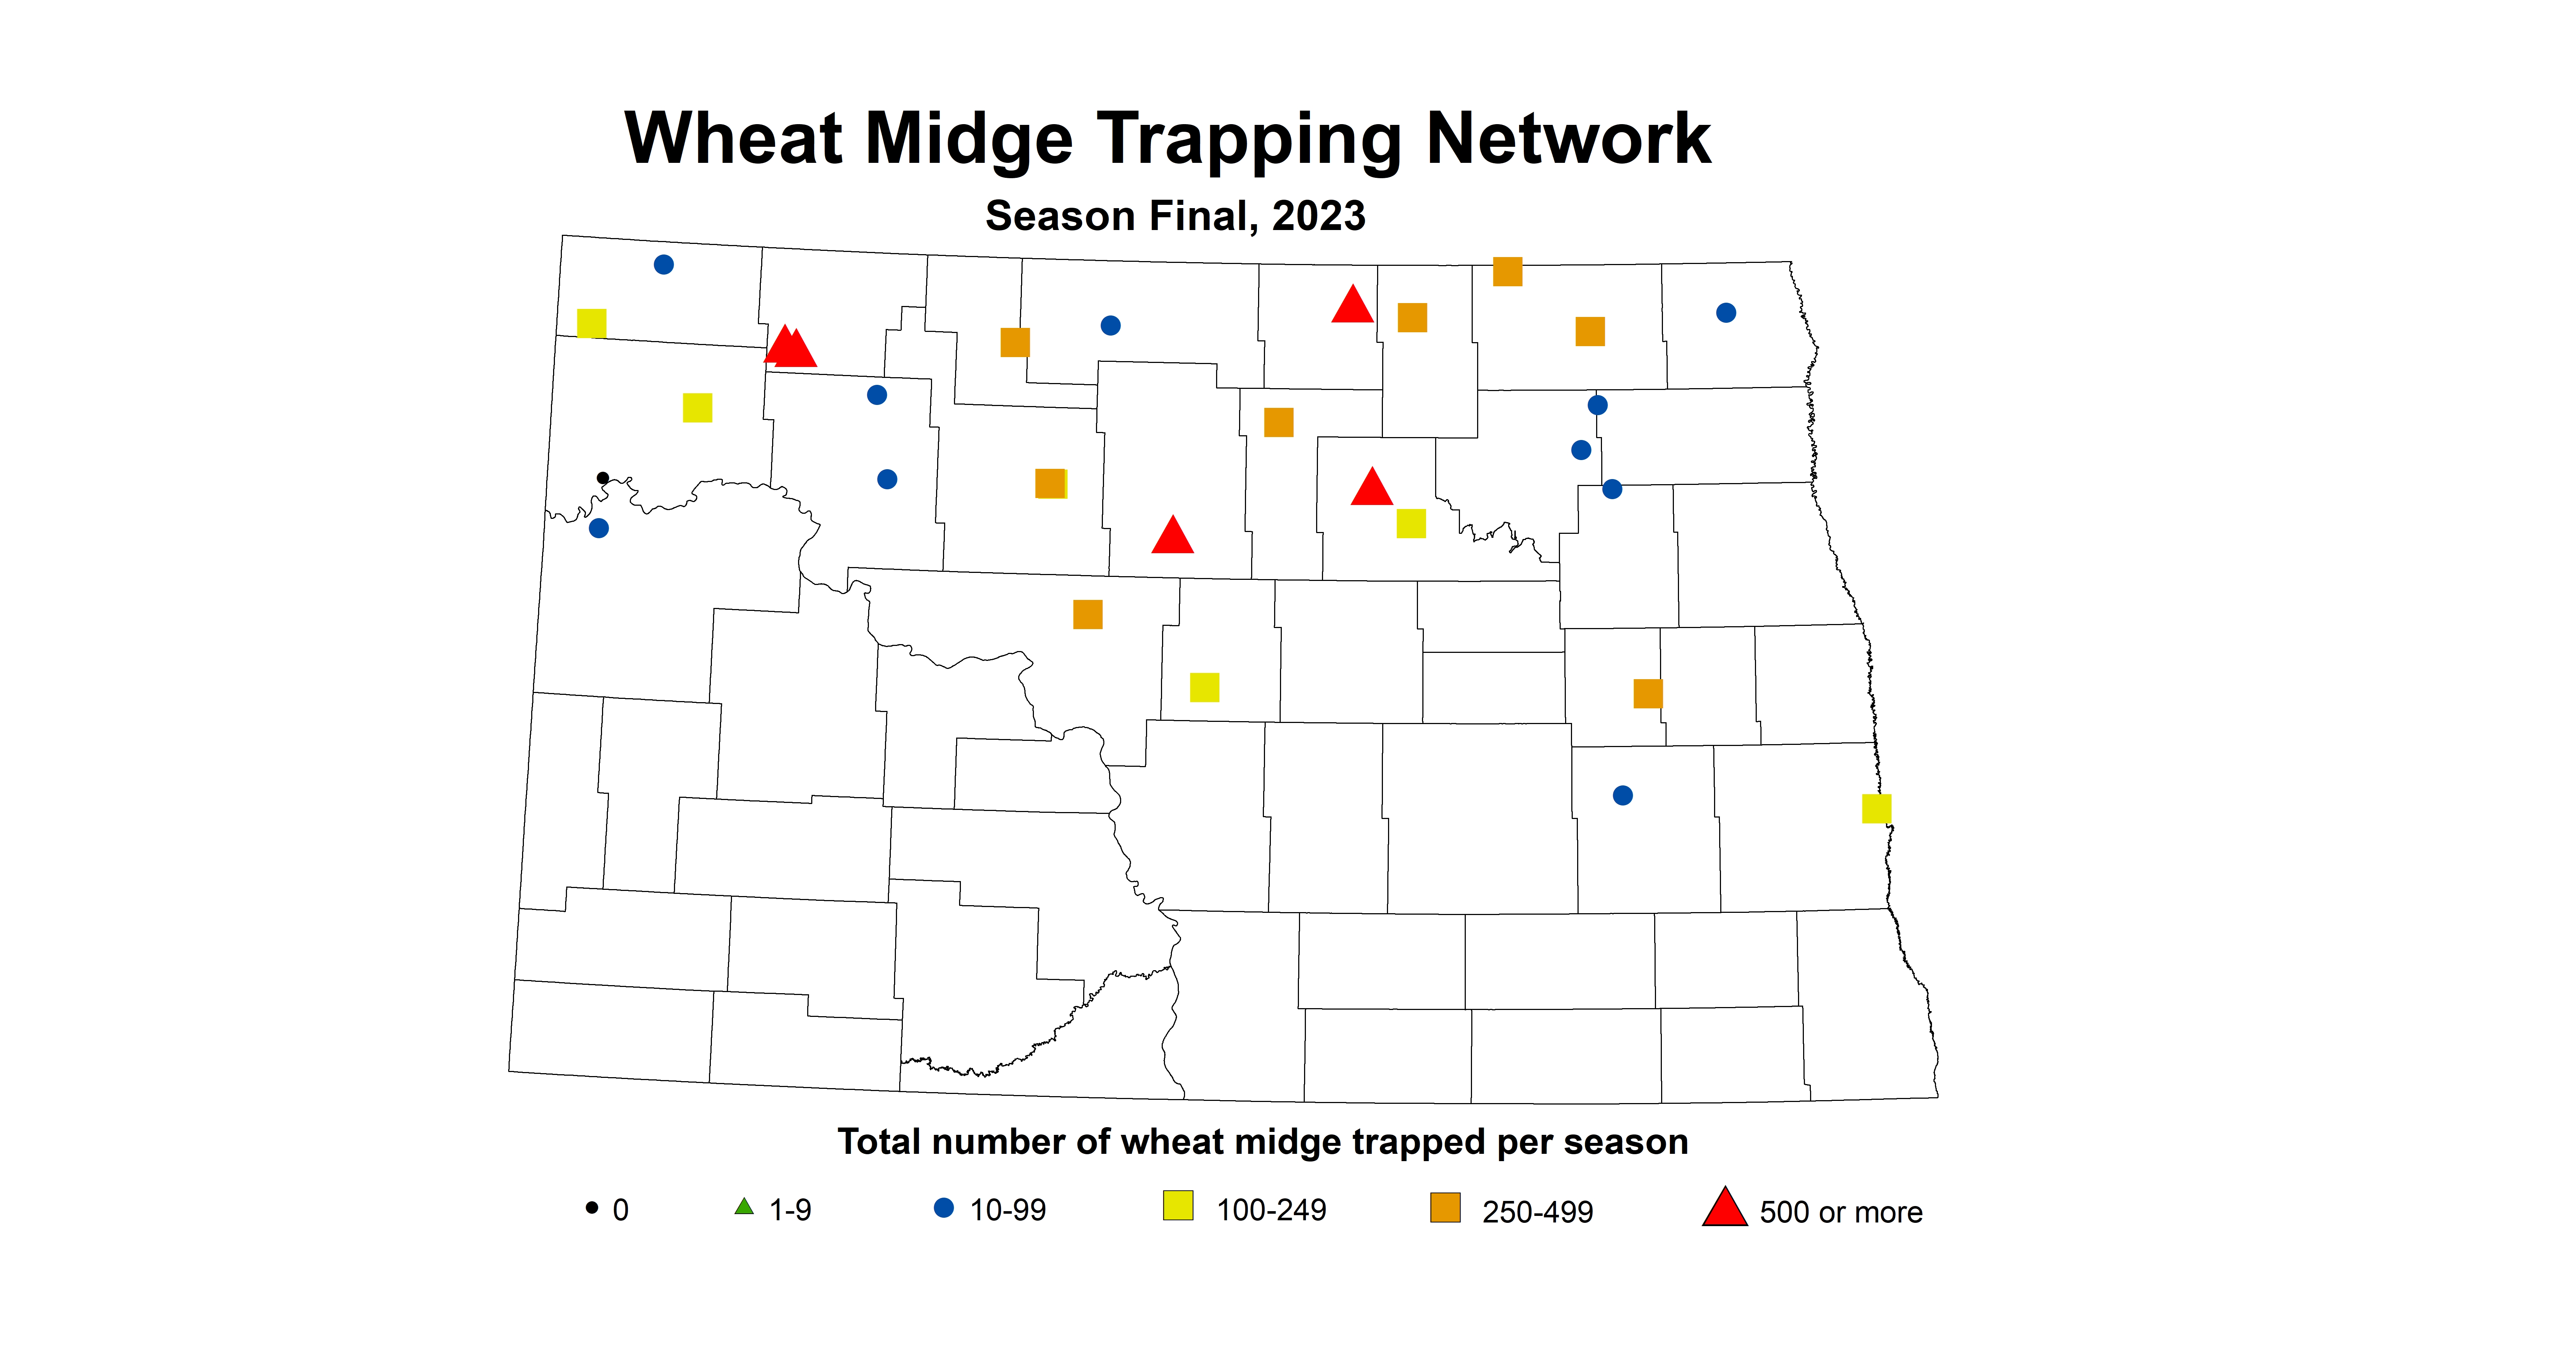 wheat midge trap season final 2023